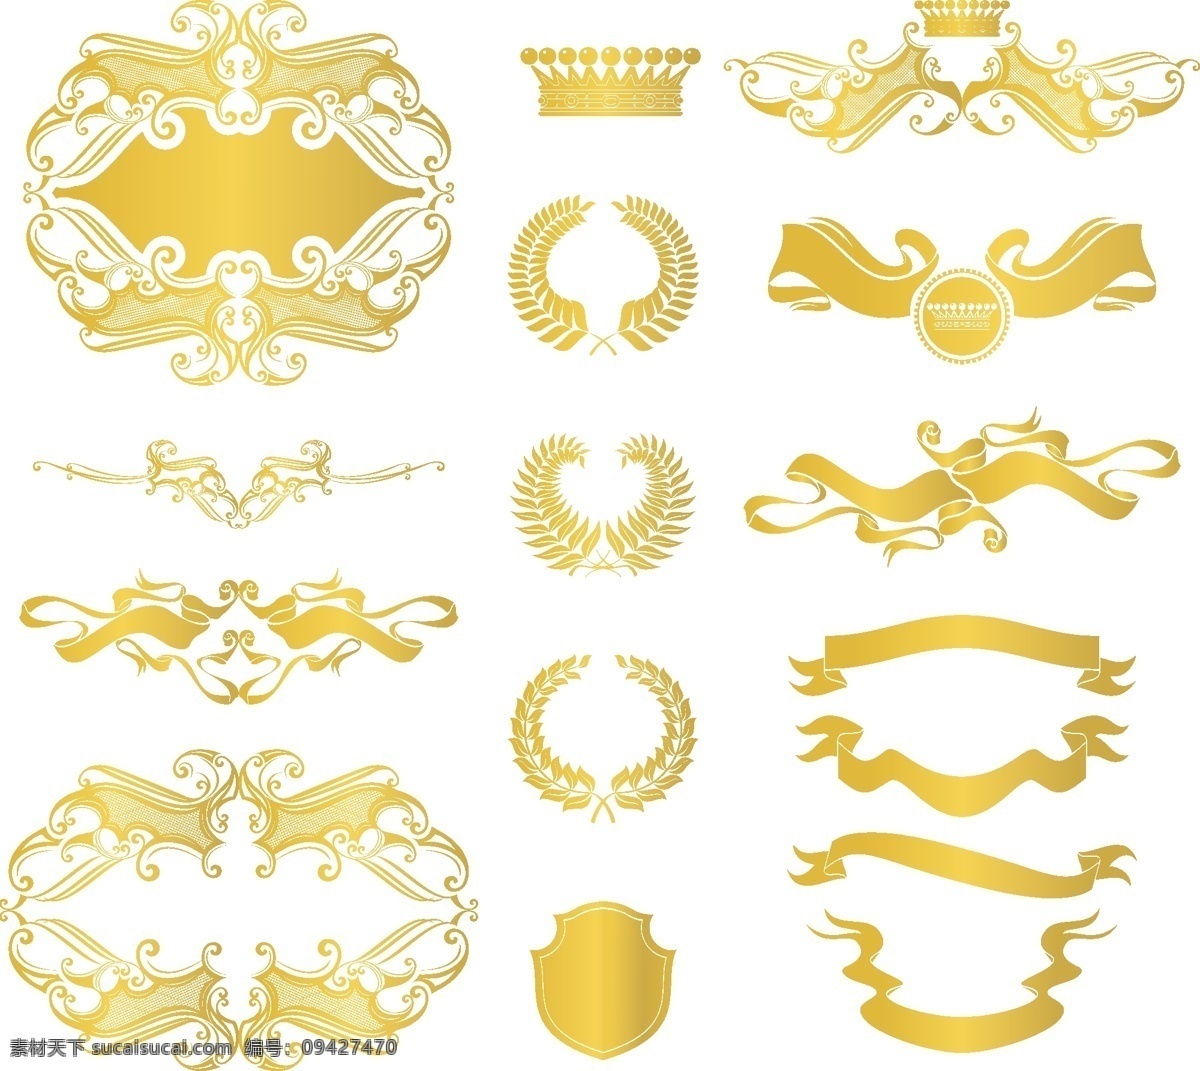 黄金 欧洲 元素 装饰 装饰元素 欧洲的黄金 黄金装饰 金 冠 矢量 矢量图 其他矢量图